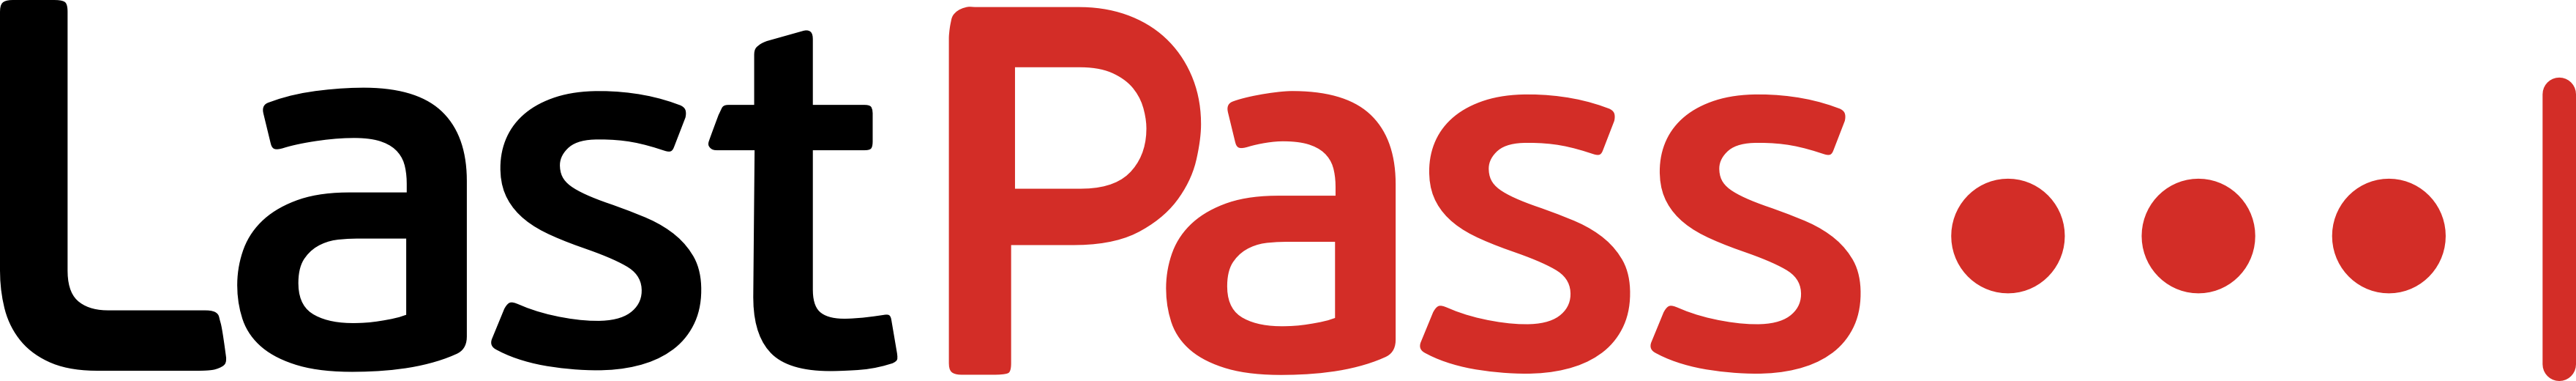 lastpass-logo-color.png